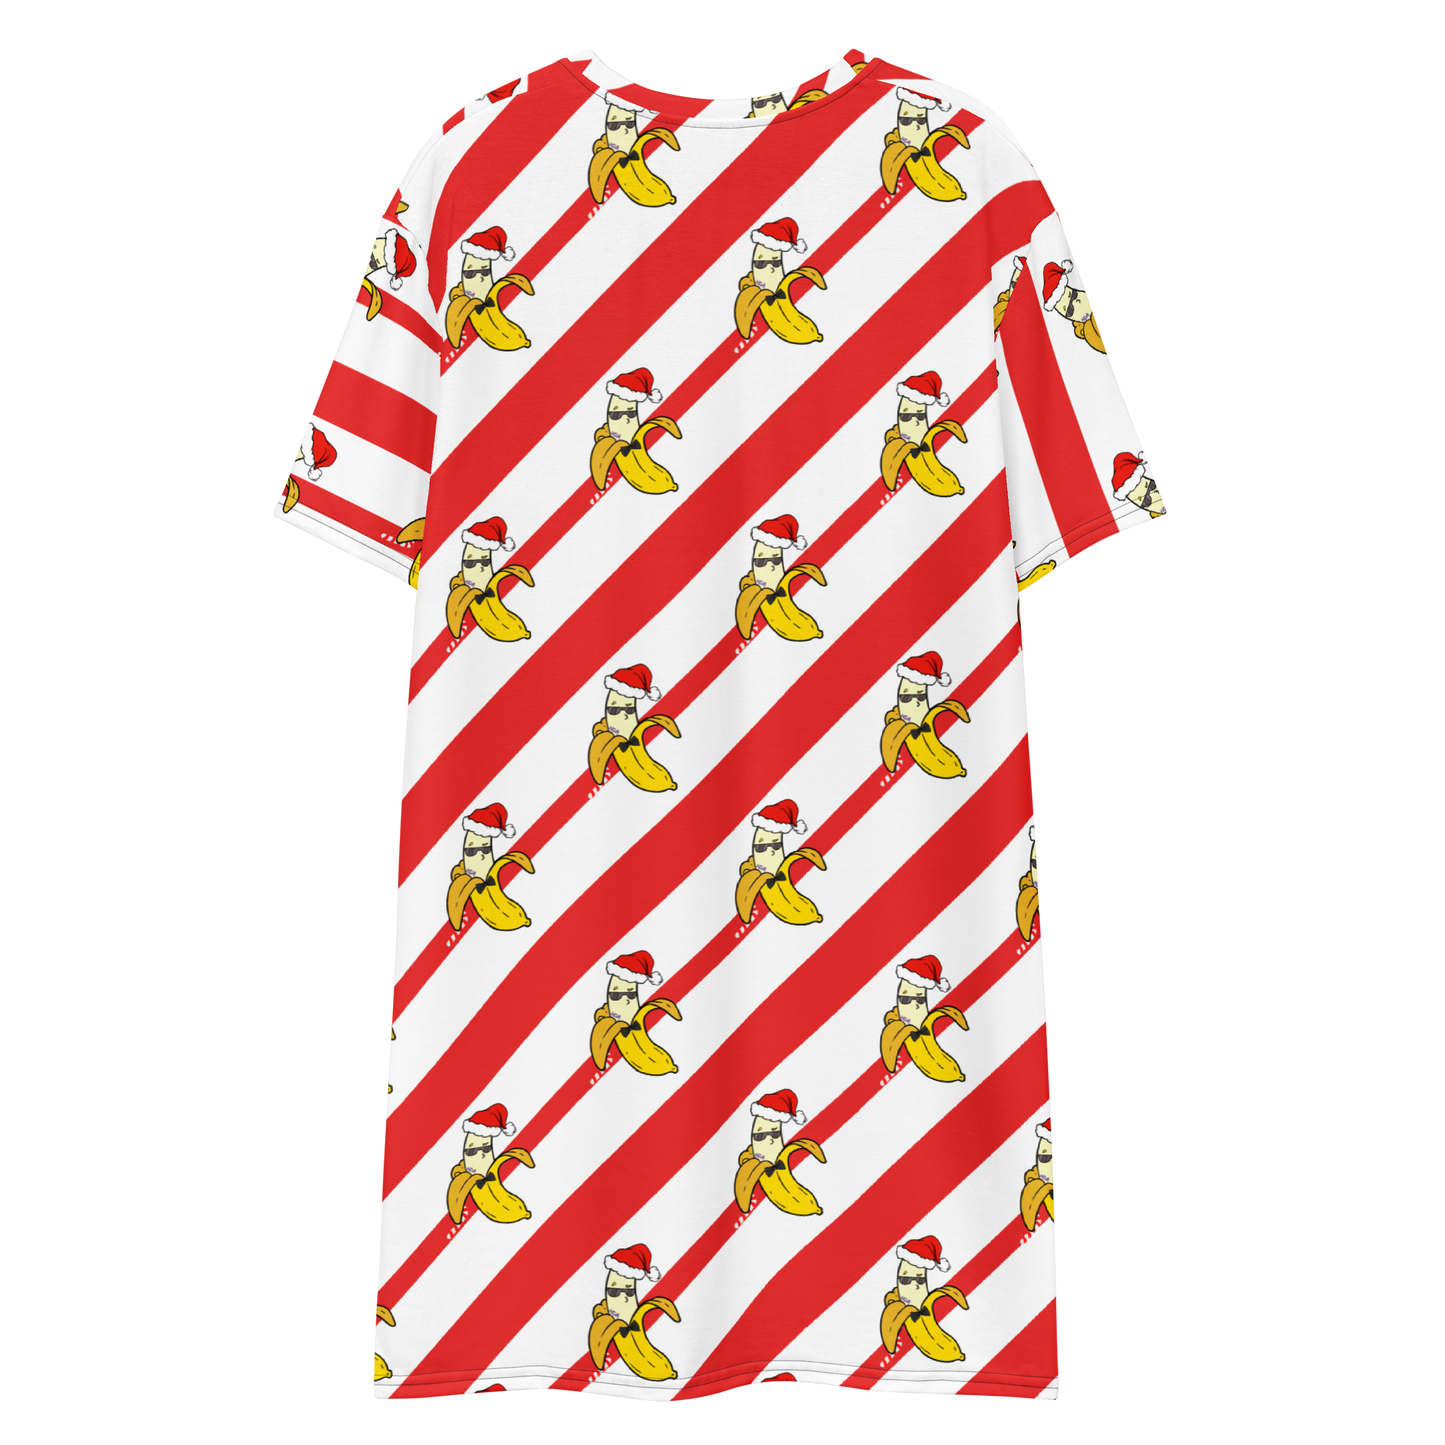 Candy Cane T-shirt dress